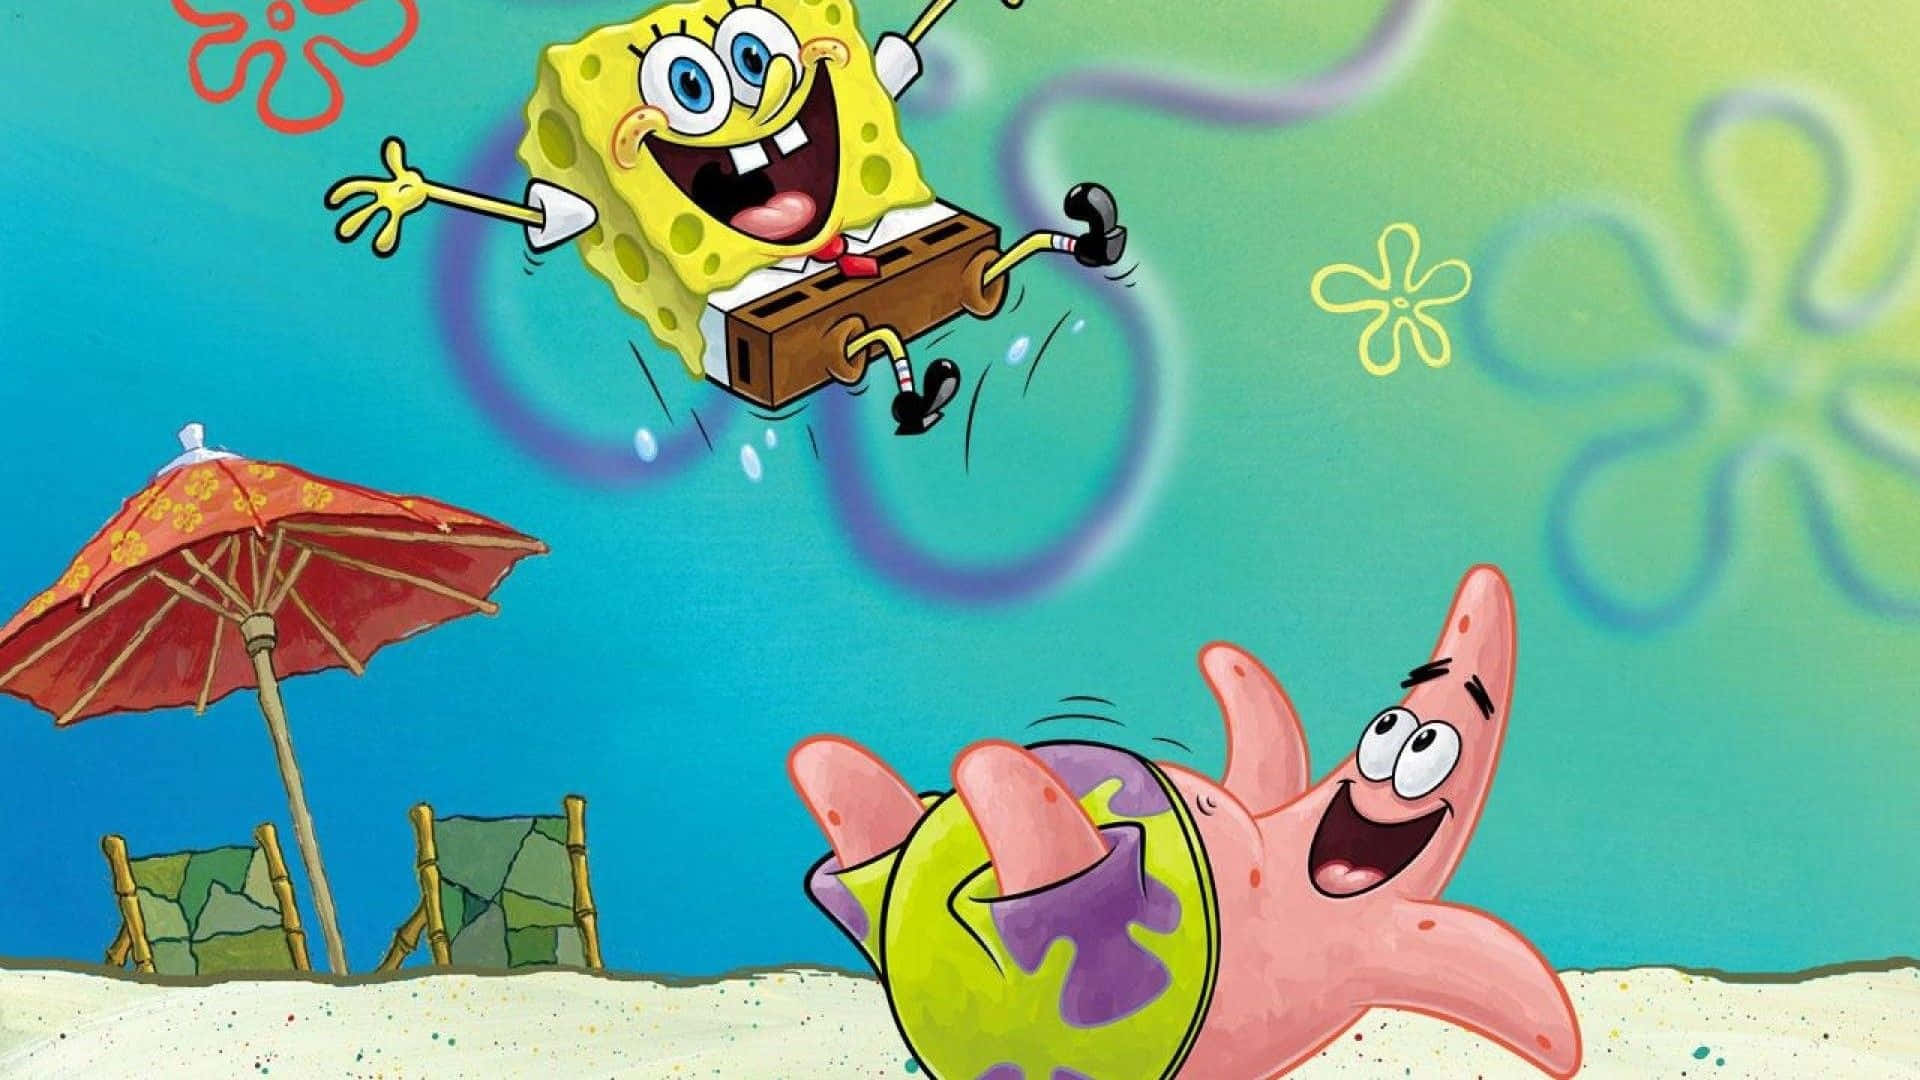 Njutav Utseendet På Din Enhet Med Denna Väggpapper Med Spongebob-tema. Wallpaper